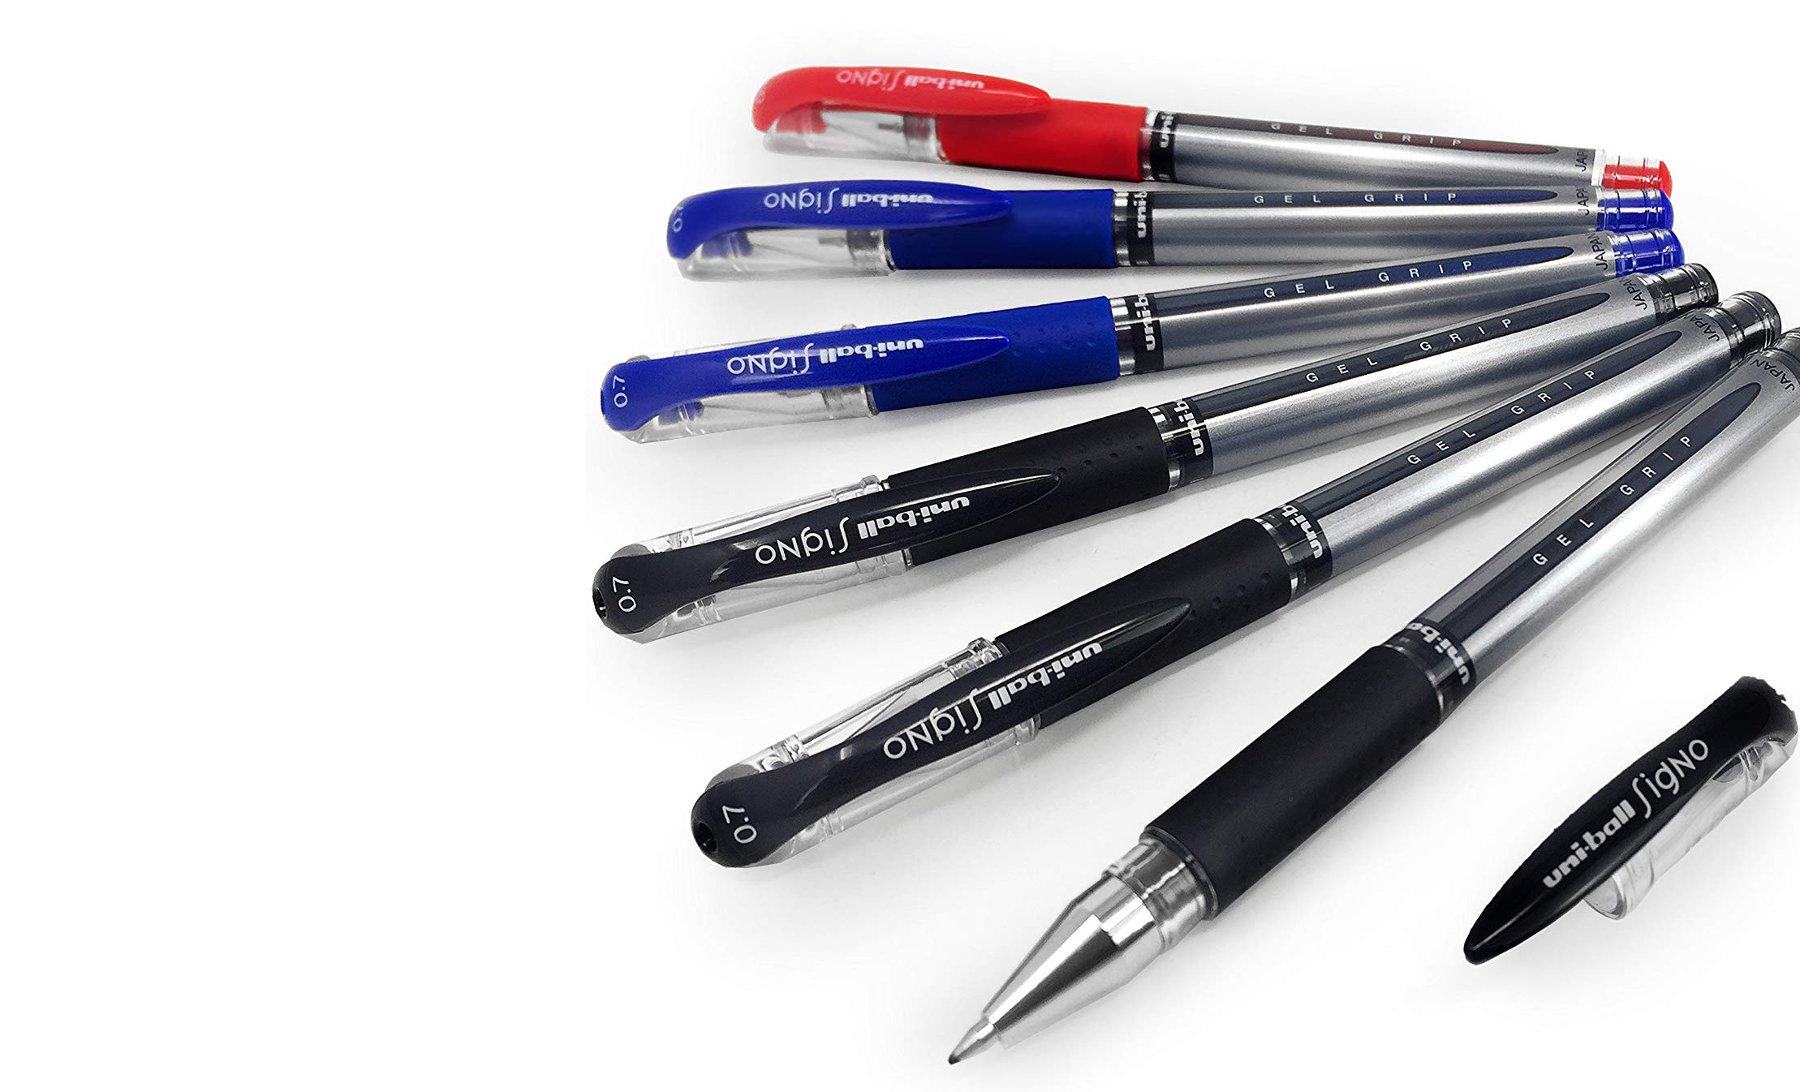 Hermoso bolígrafo Negro/Azul recarga oleosa acero inoxidable el mejor regalo de bolígrafo para hombres y mujeres y bolígrafo de gel oficina administrativa profesional 